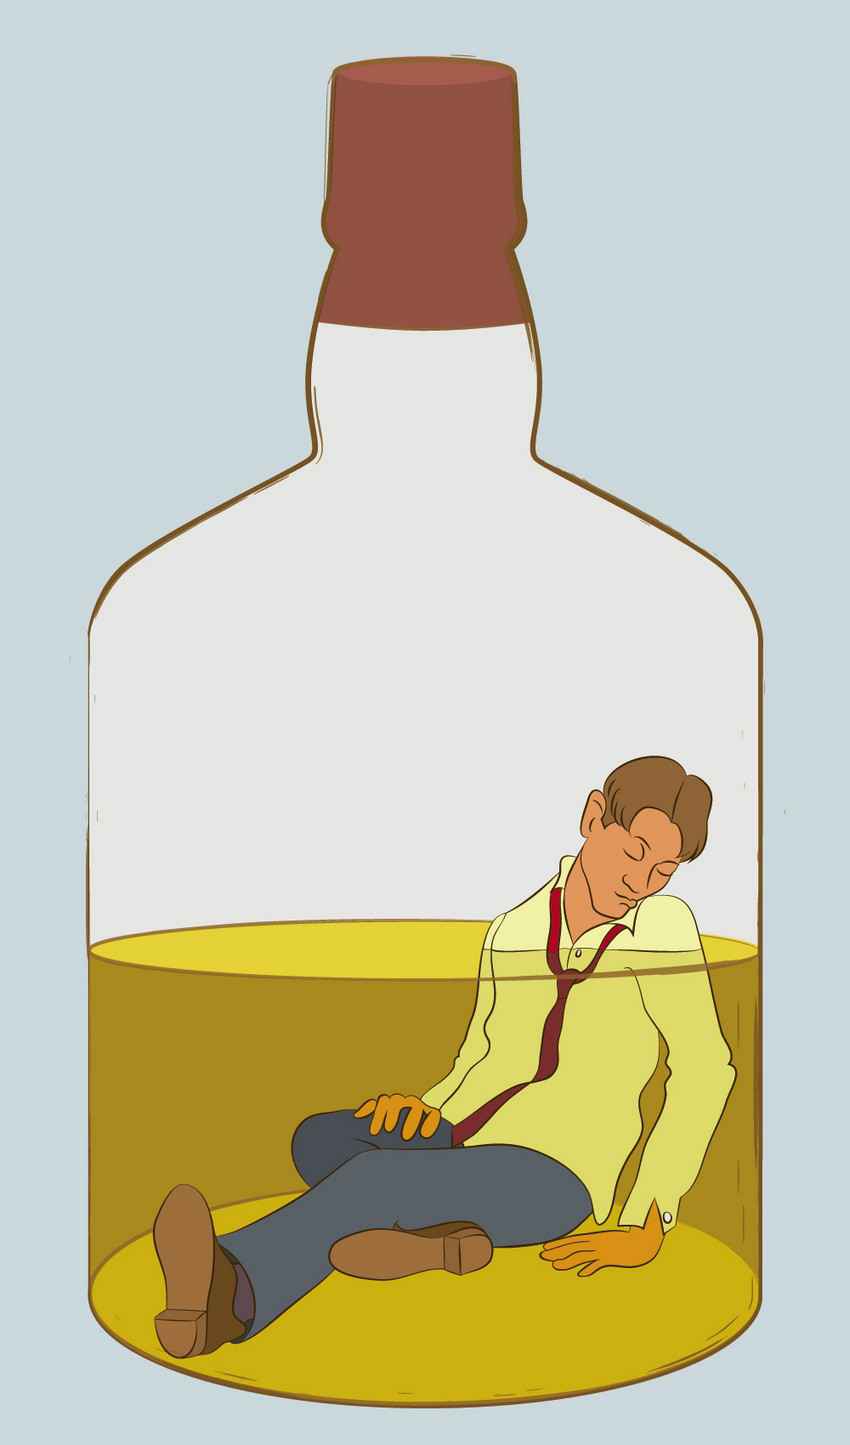 A drunk man inside of a tequila bottle.